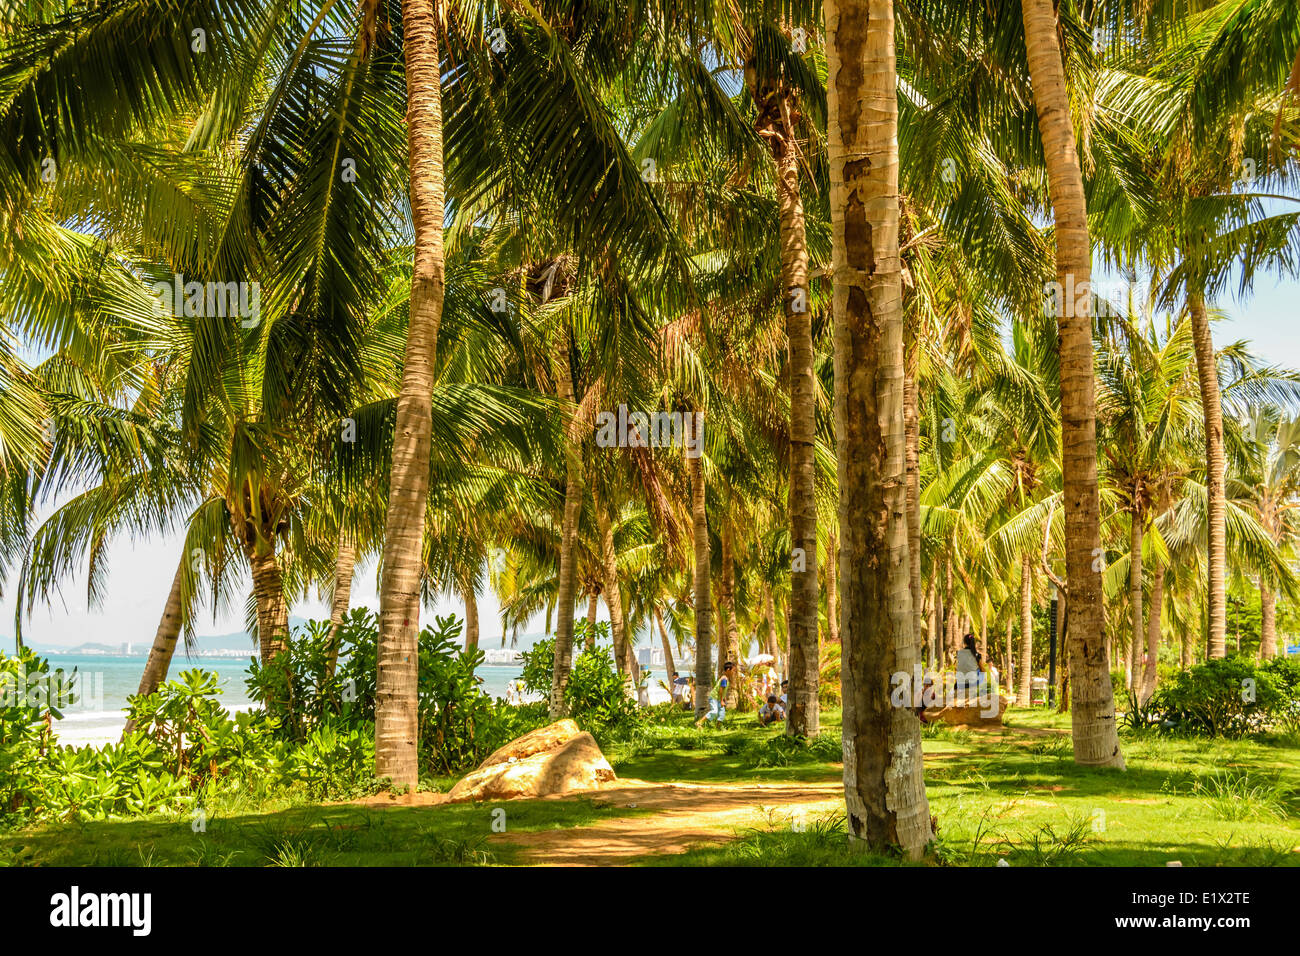 coconut grove on the beach Stock Photo Alamy